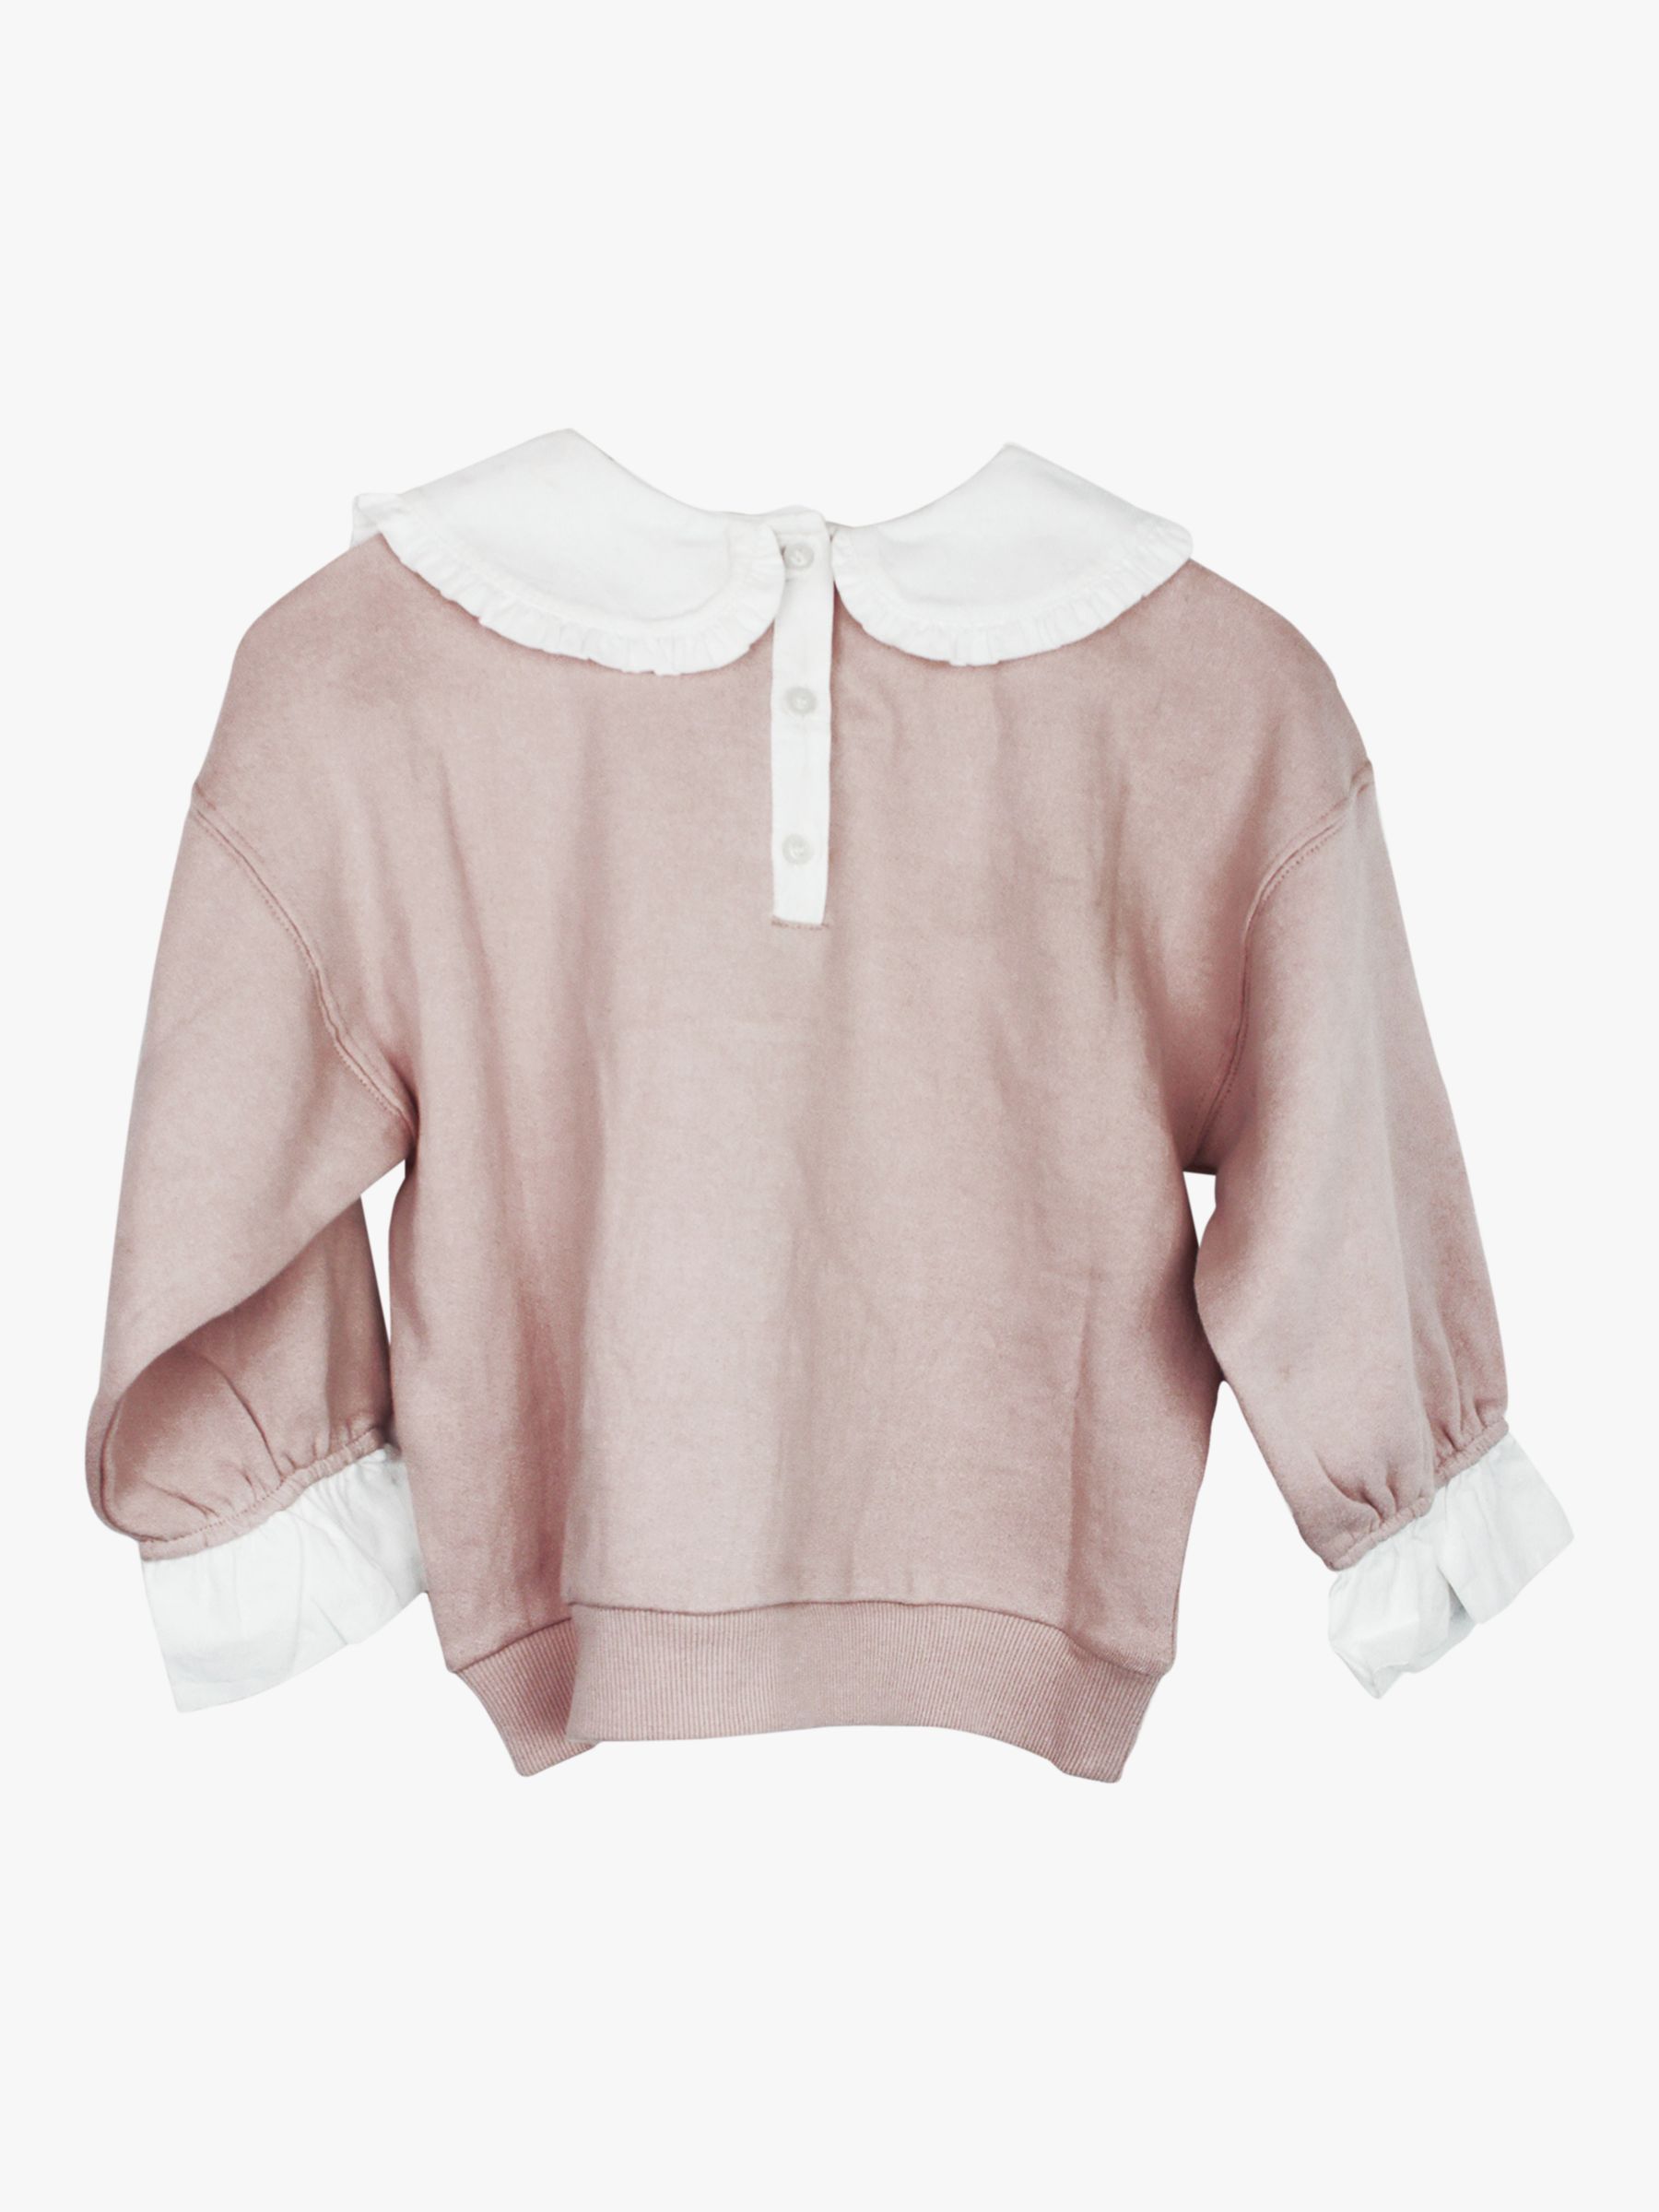 Angel & Rocket Kids' Willow Collar Sweater, Blush, 3 years